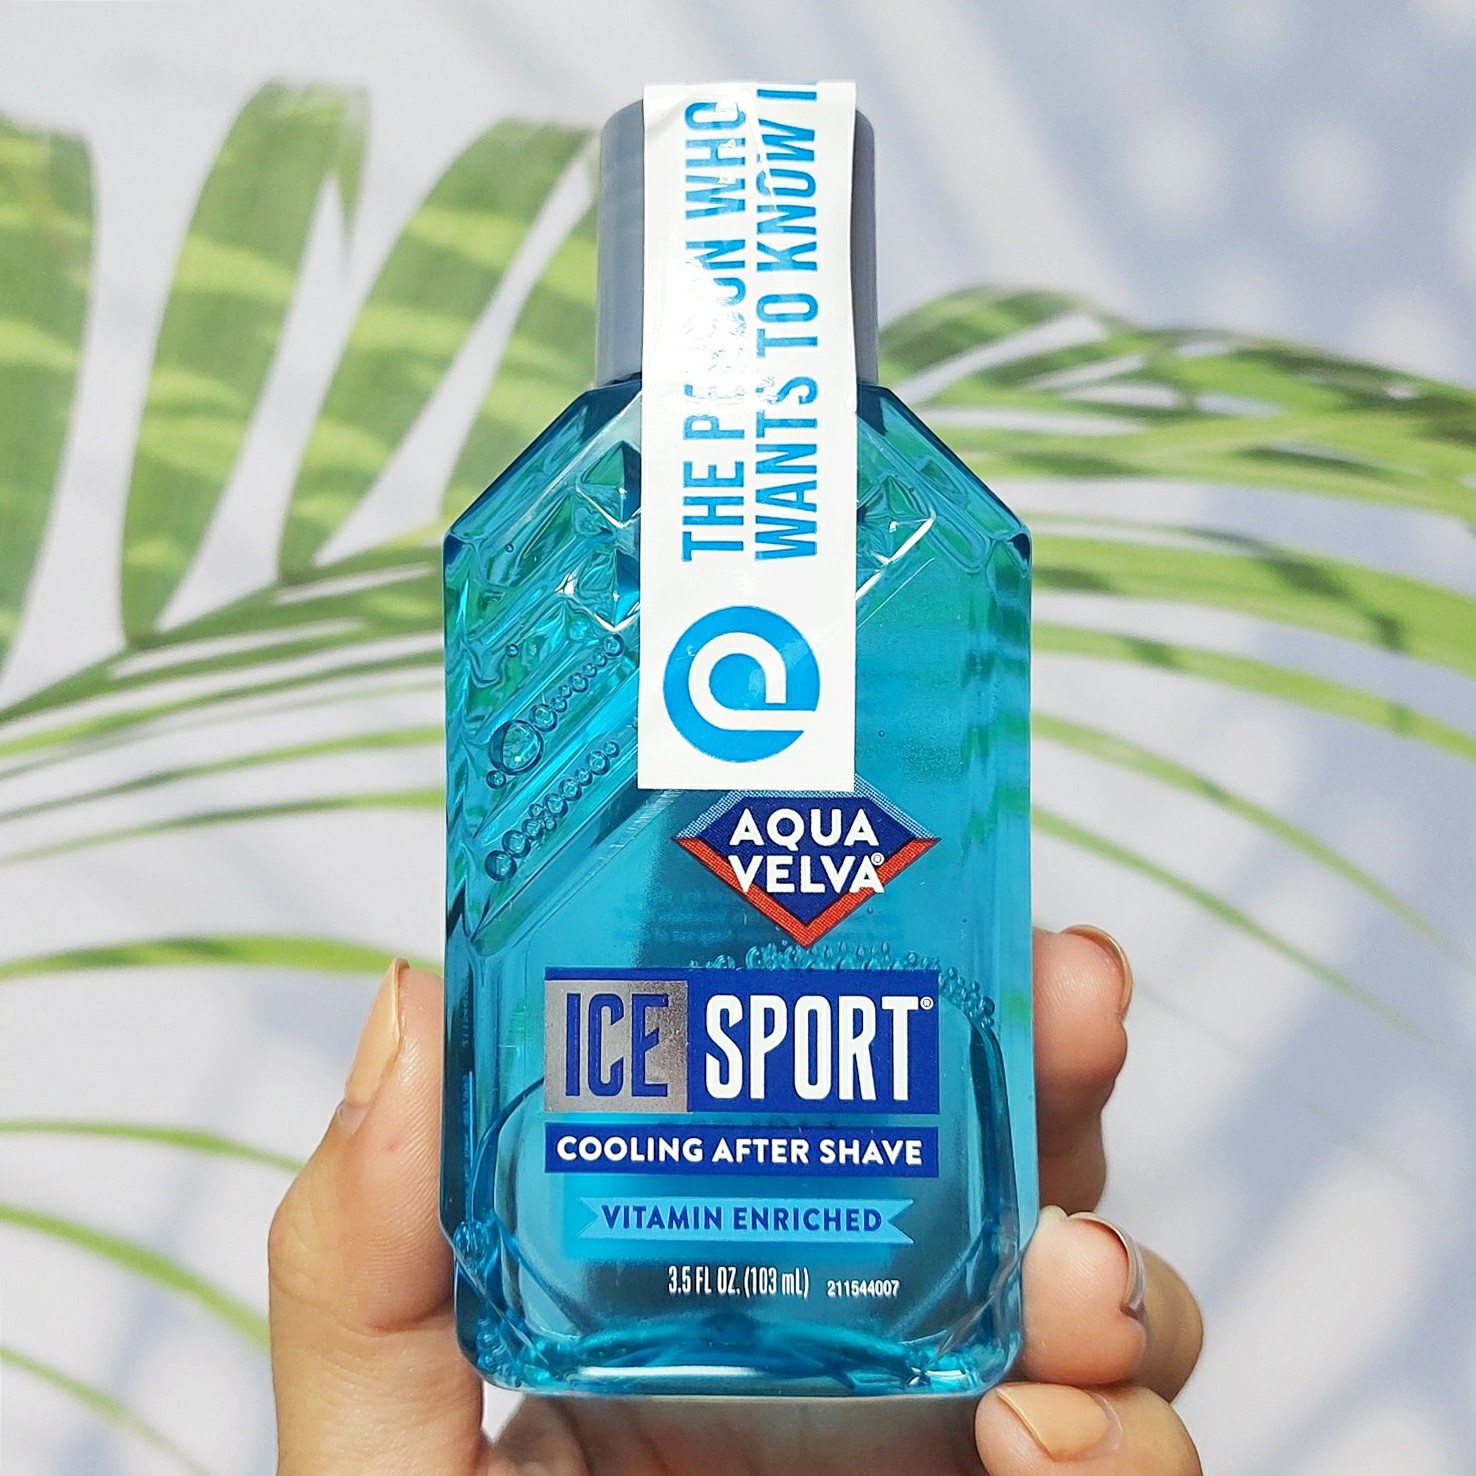 ผลิตภัณฑ์บำรุงผิวหน้า หลังโกนหนวด Ice Sport Cooling After Shave 103 ml (Aqua Velva®)